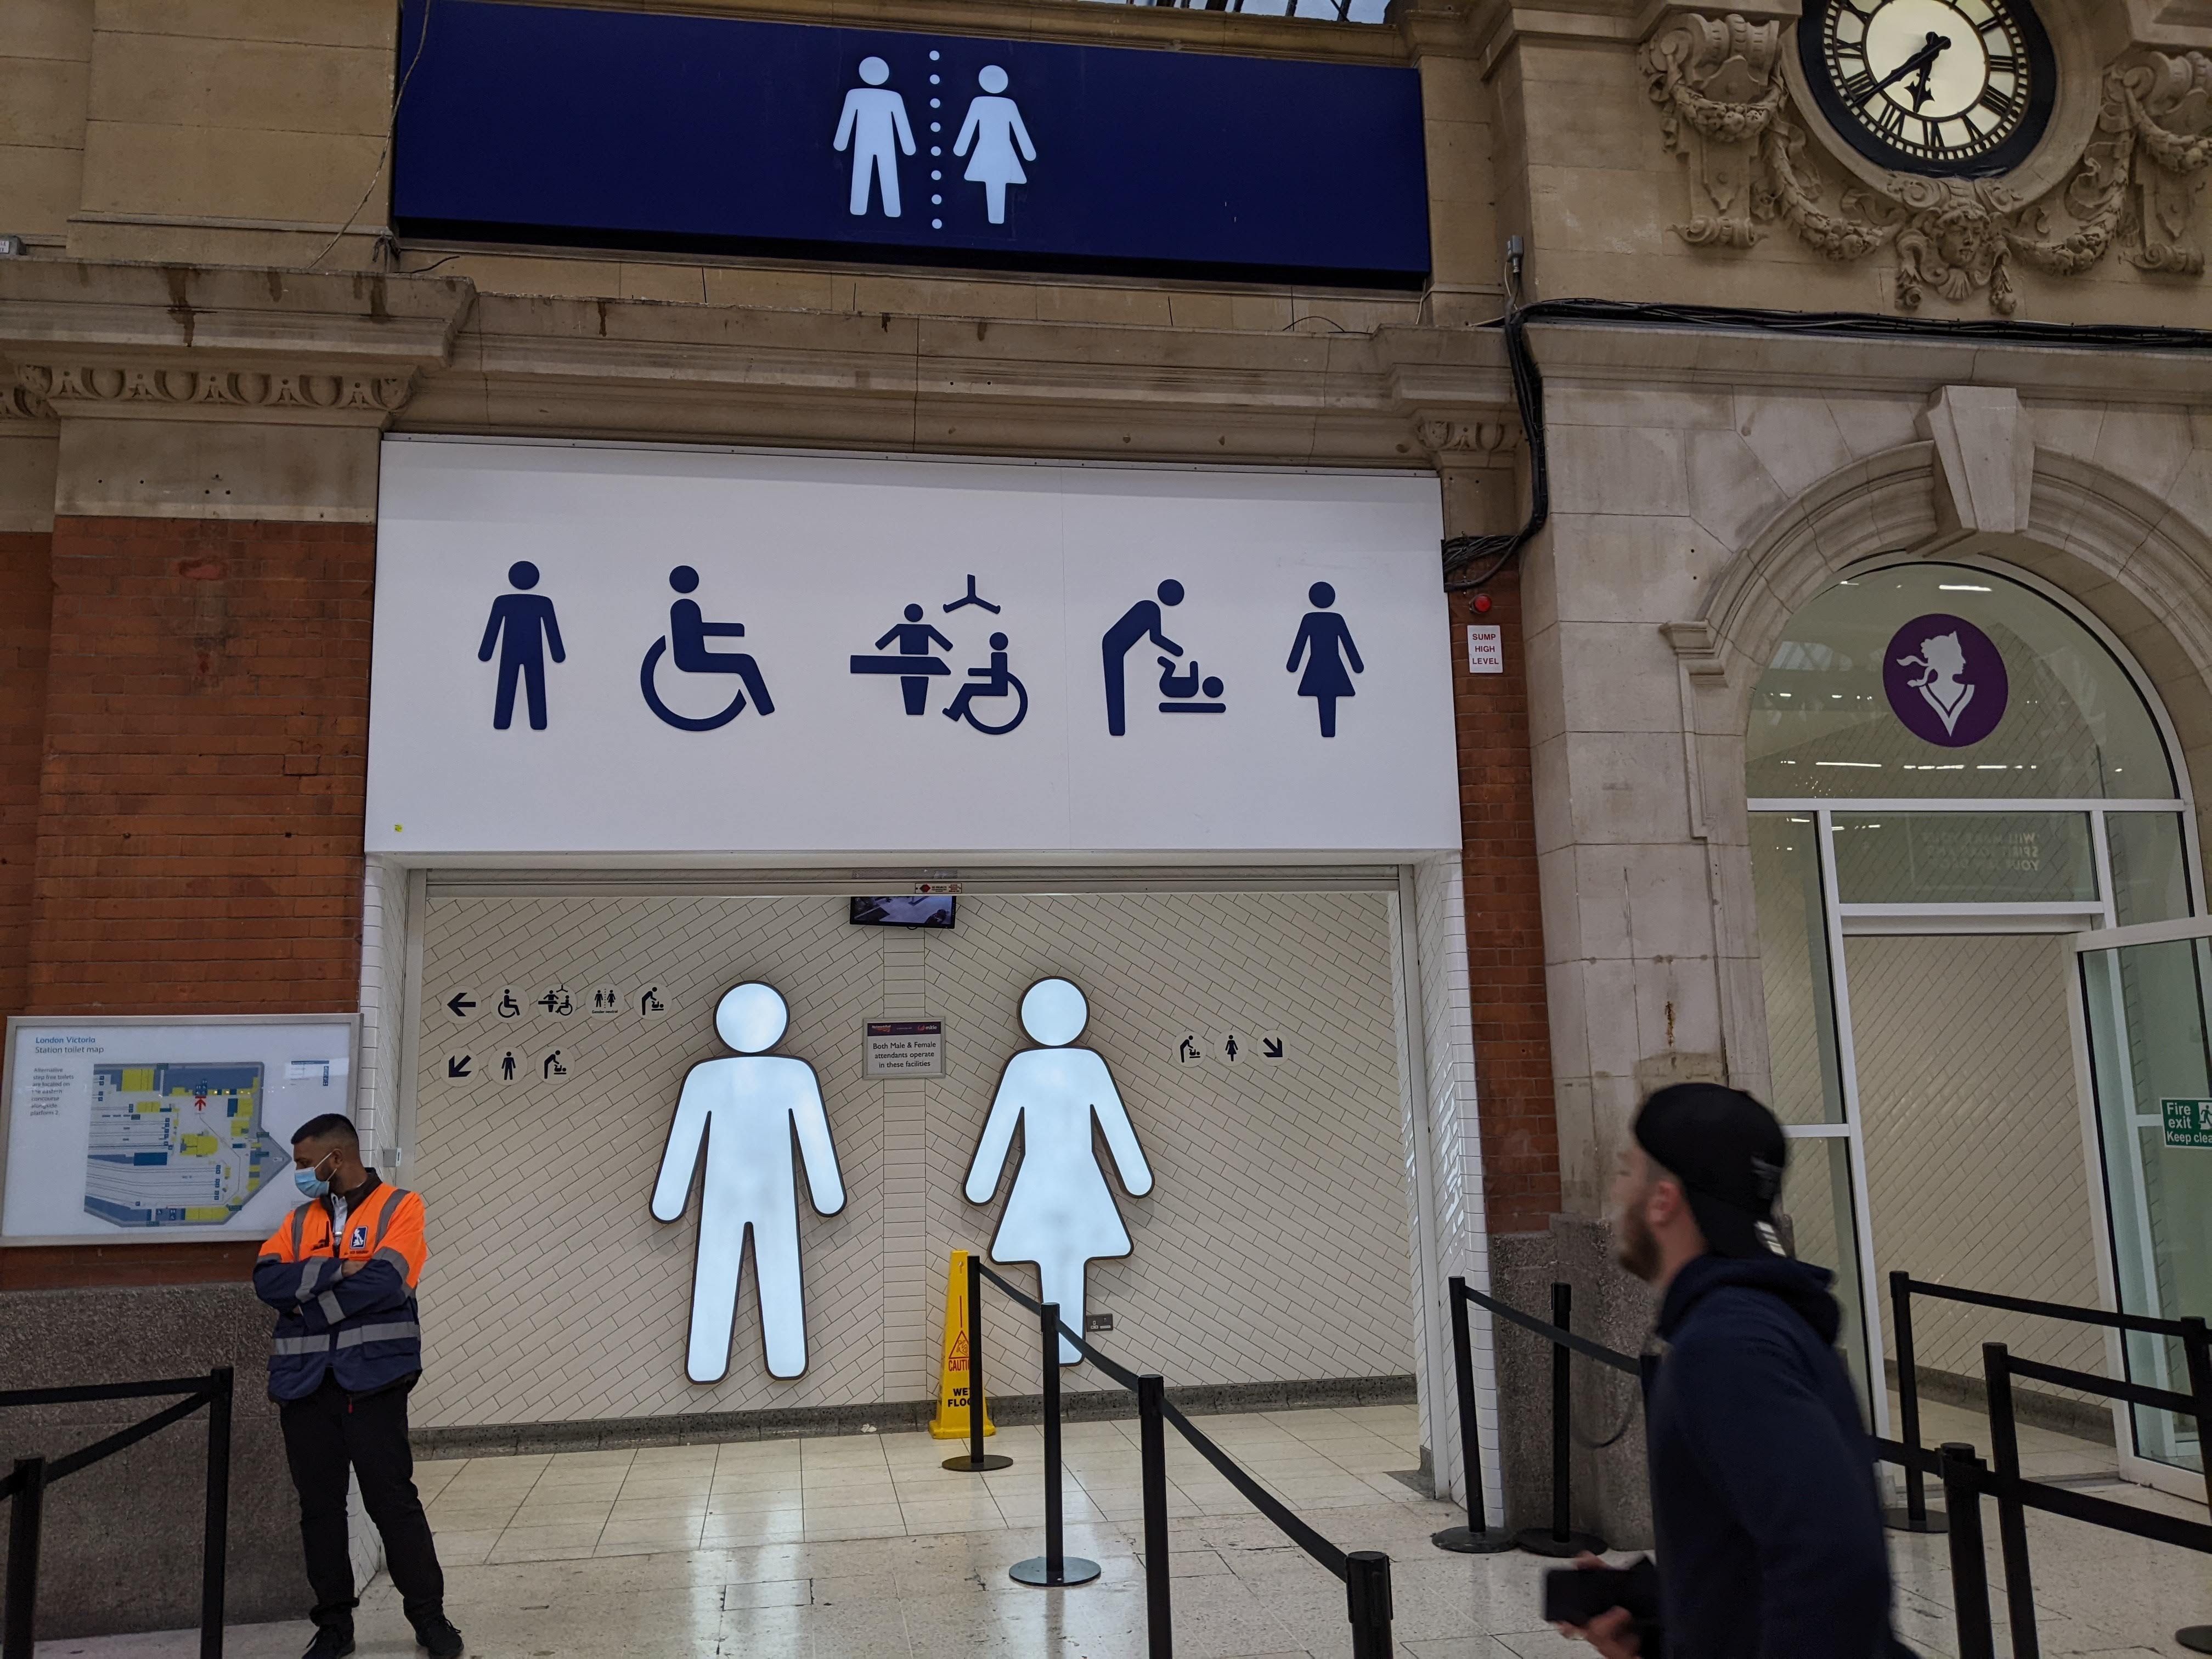 En Angleterre, des toilettes non mixtes obligatoires dans les nouveaux bâtiments 